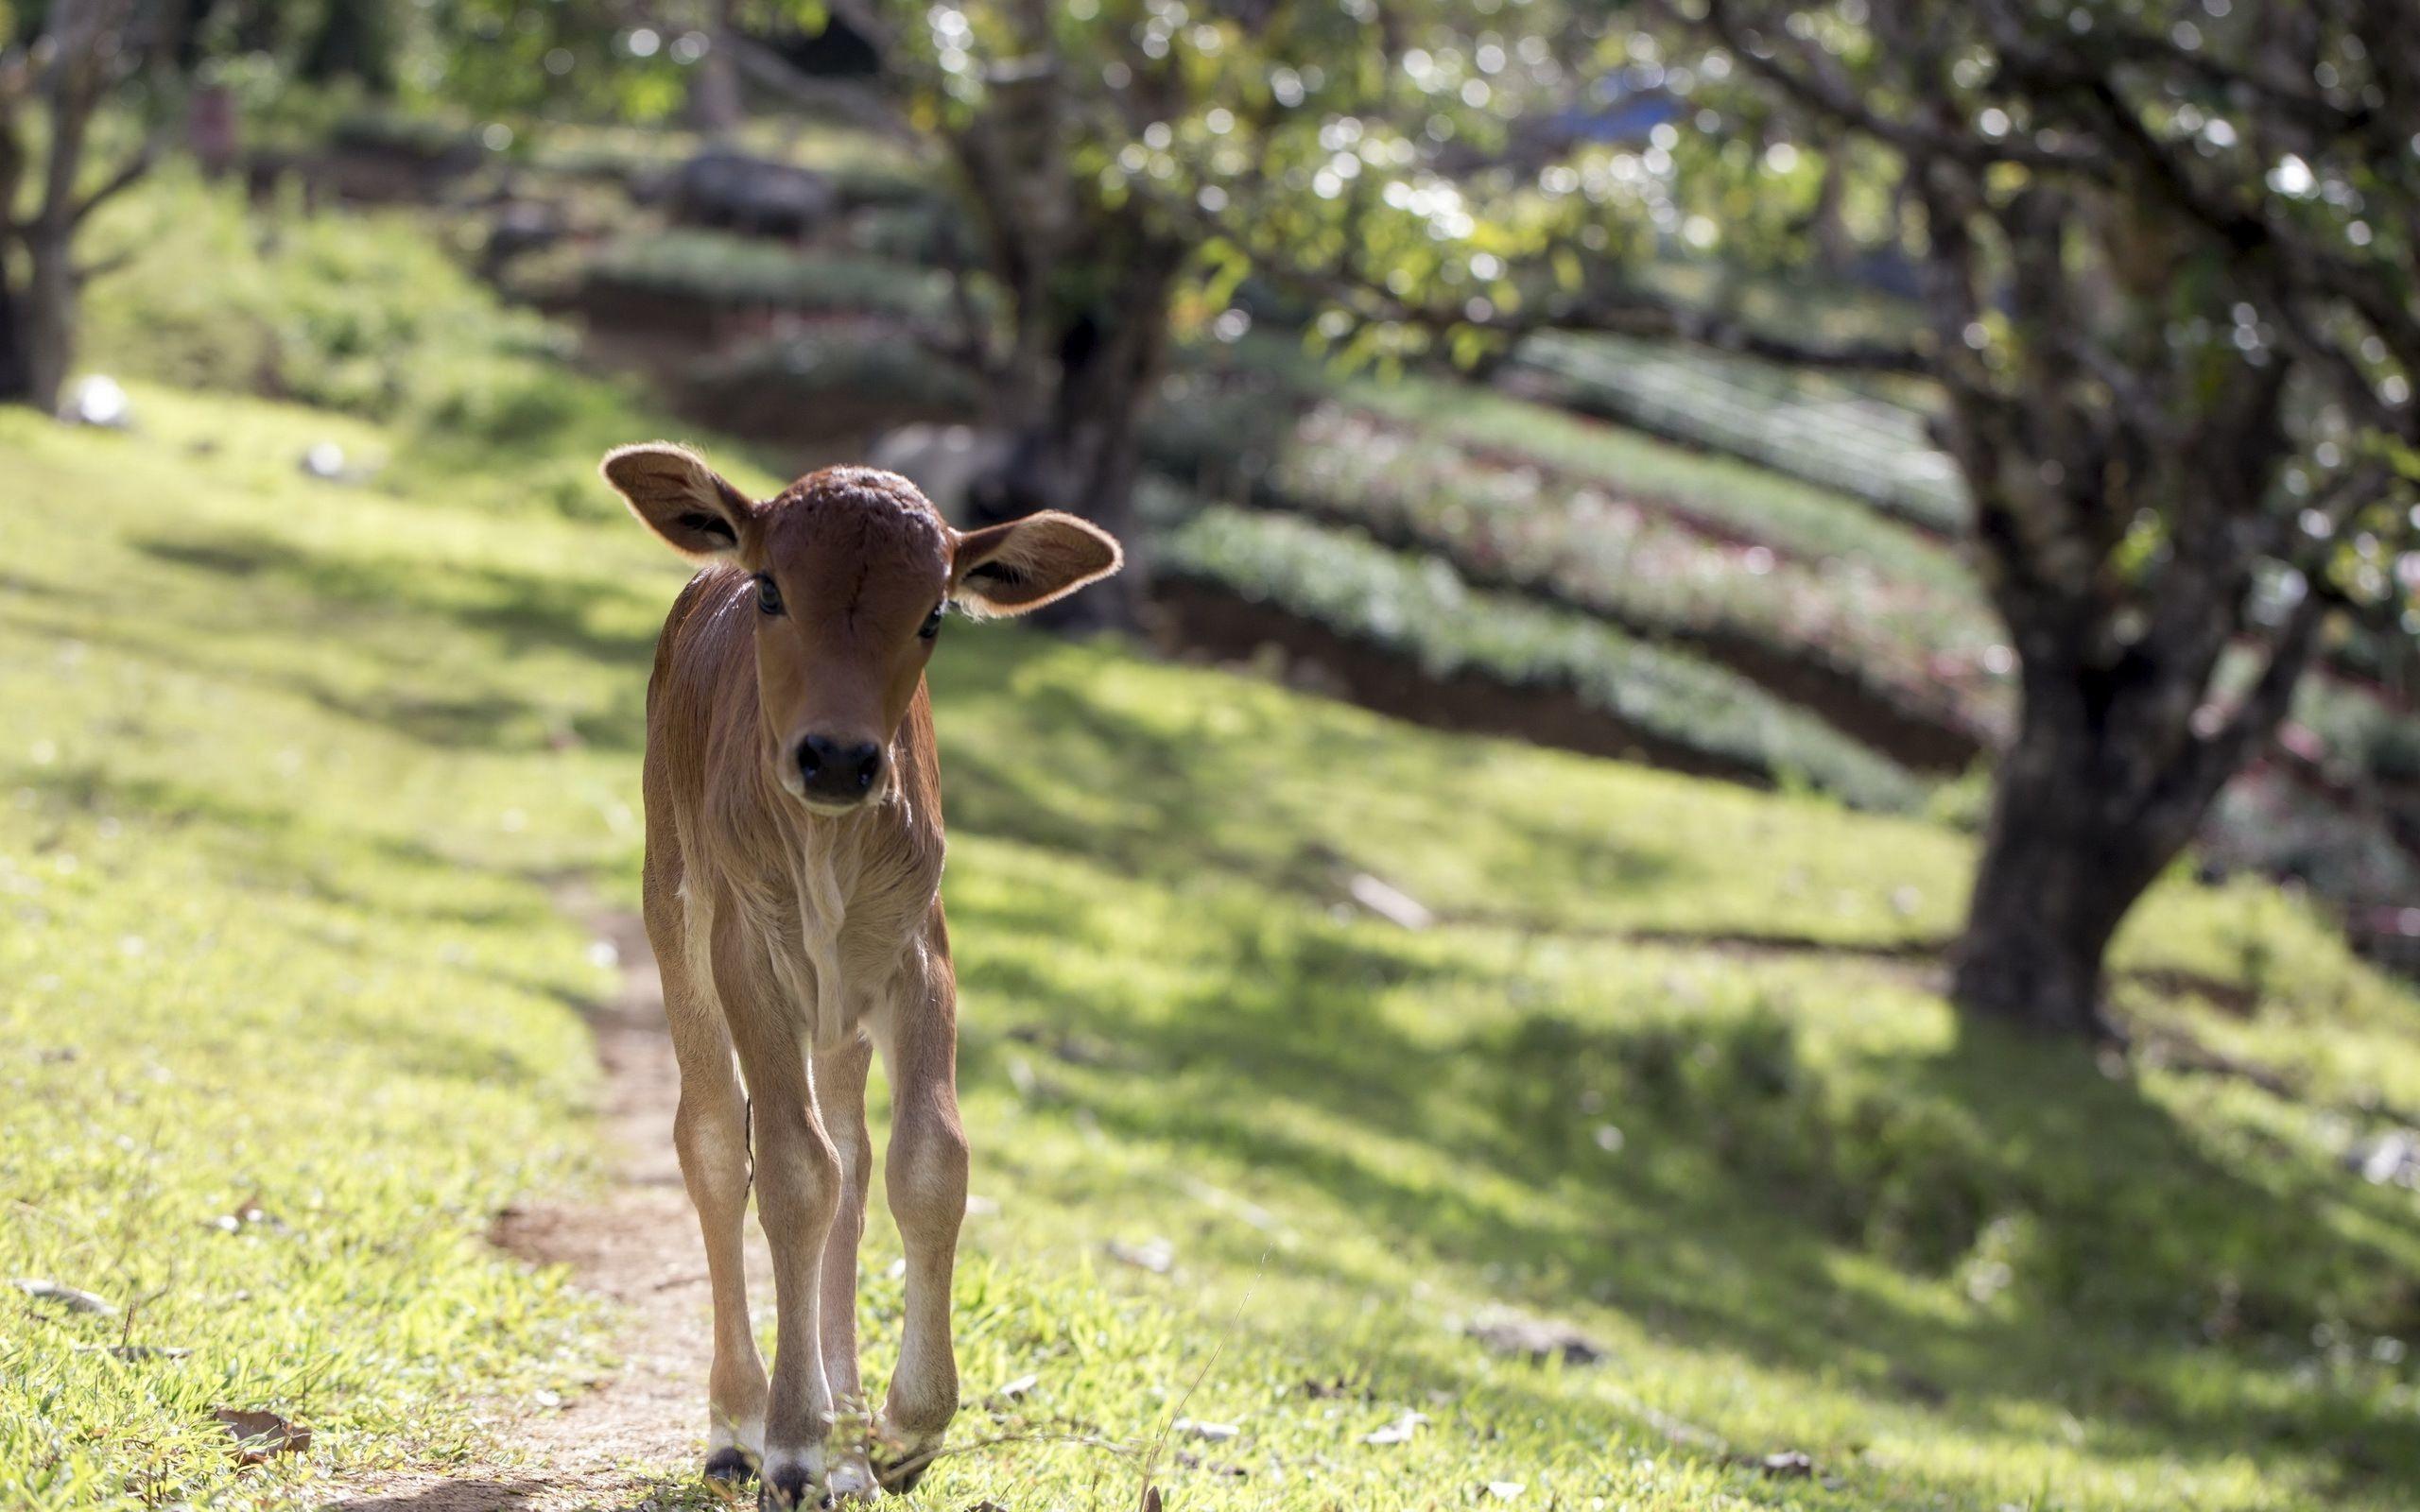 Animals: Calf Field Cow Desktop Wallpaper 2560x1600 for HD 16:9